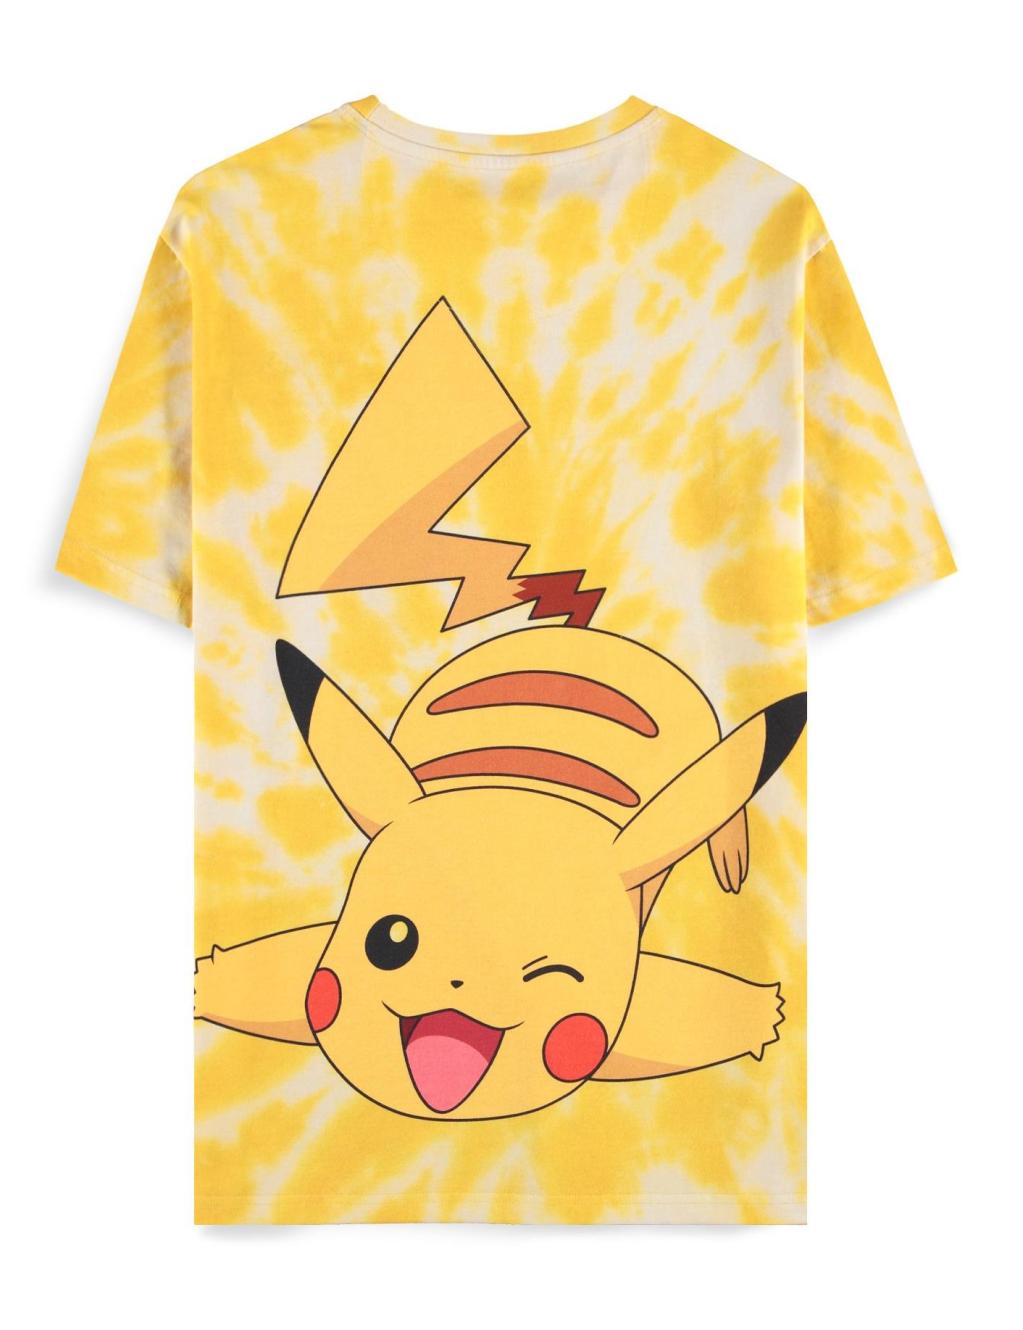 POKEMON - Ash and Pikachu - Men's T-shirt (XL)